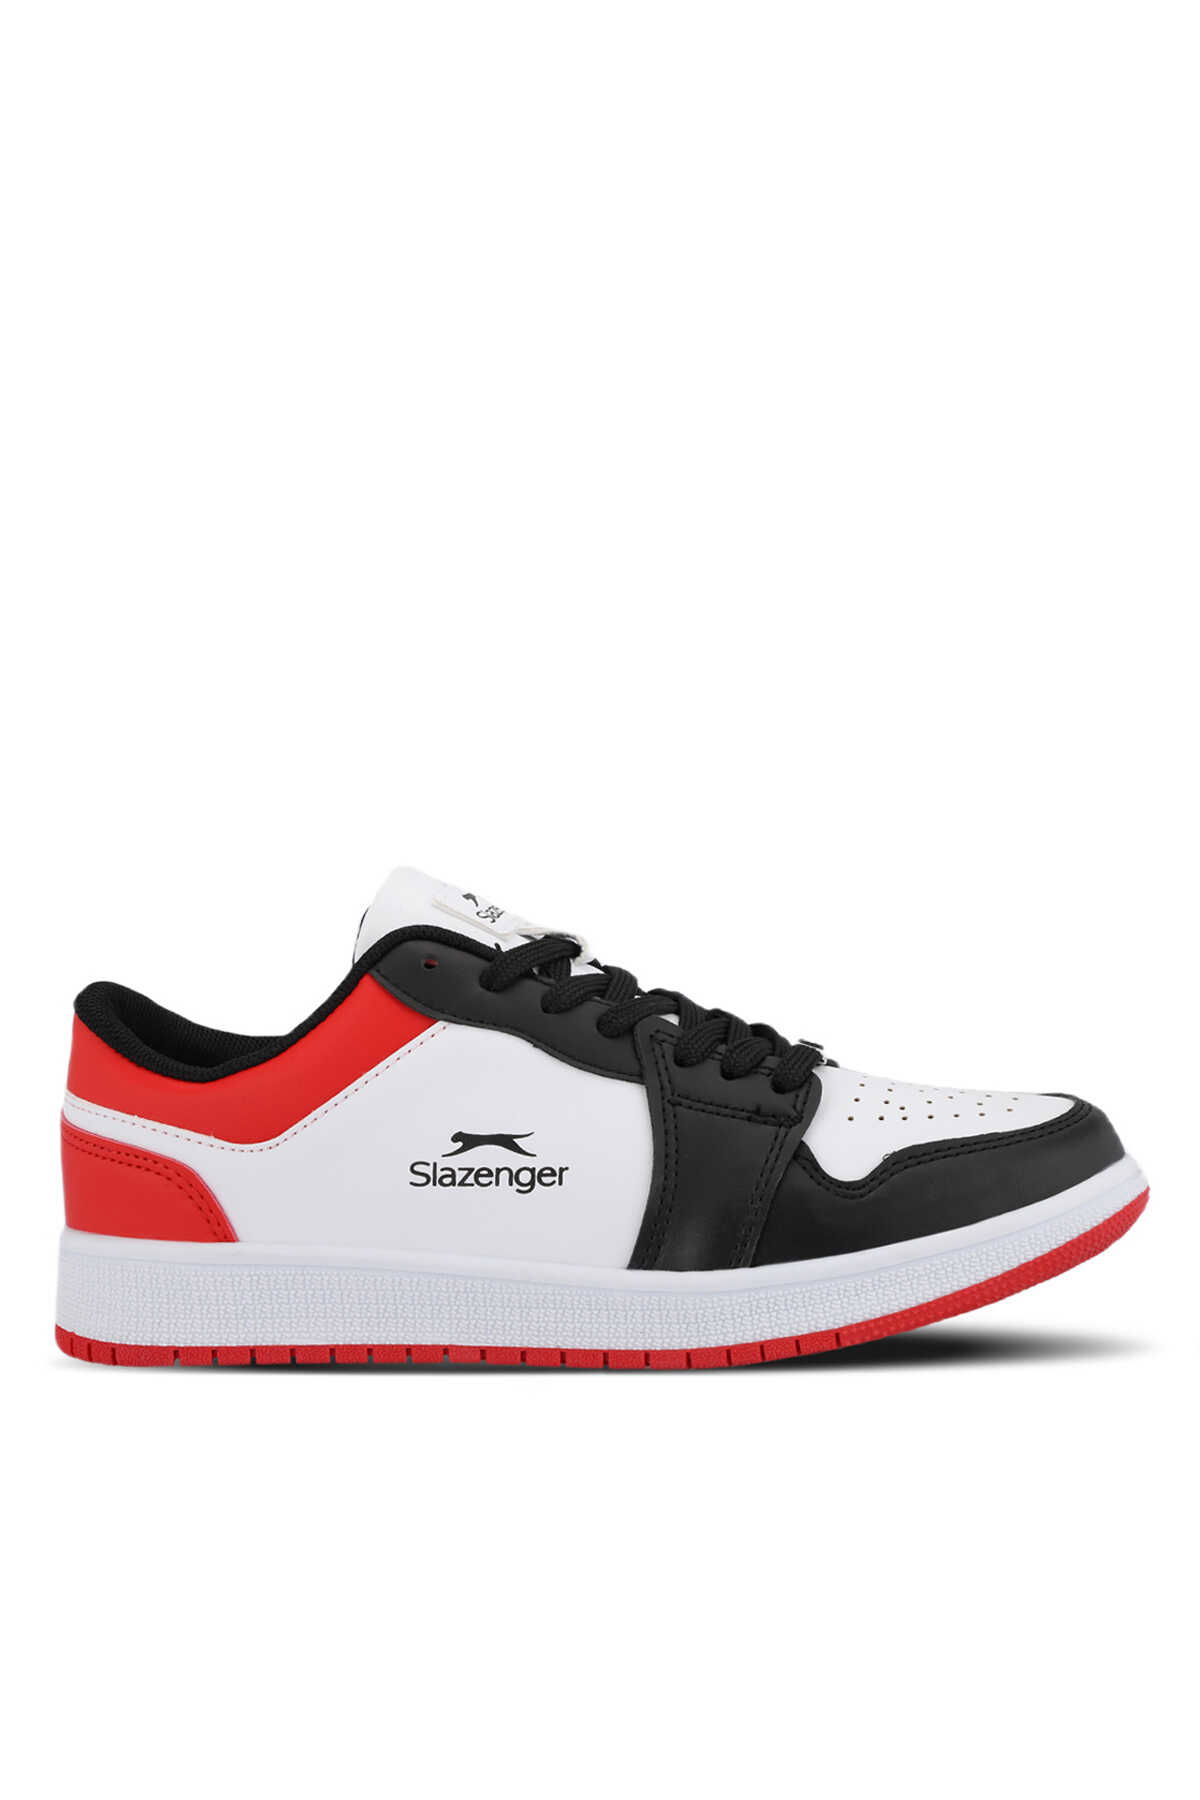 Slazenger - Slazenger PRINCE I Erkek Sneaker Ayakkabı Beyaz / Siyah / Kırmızı